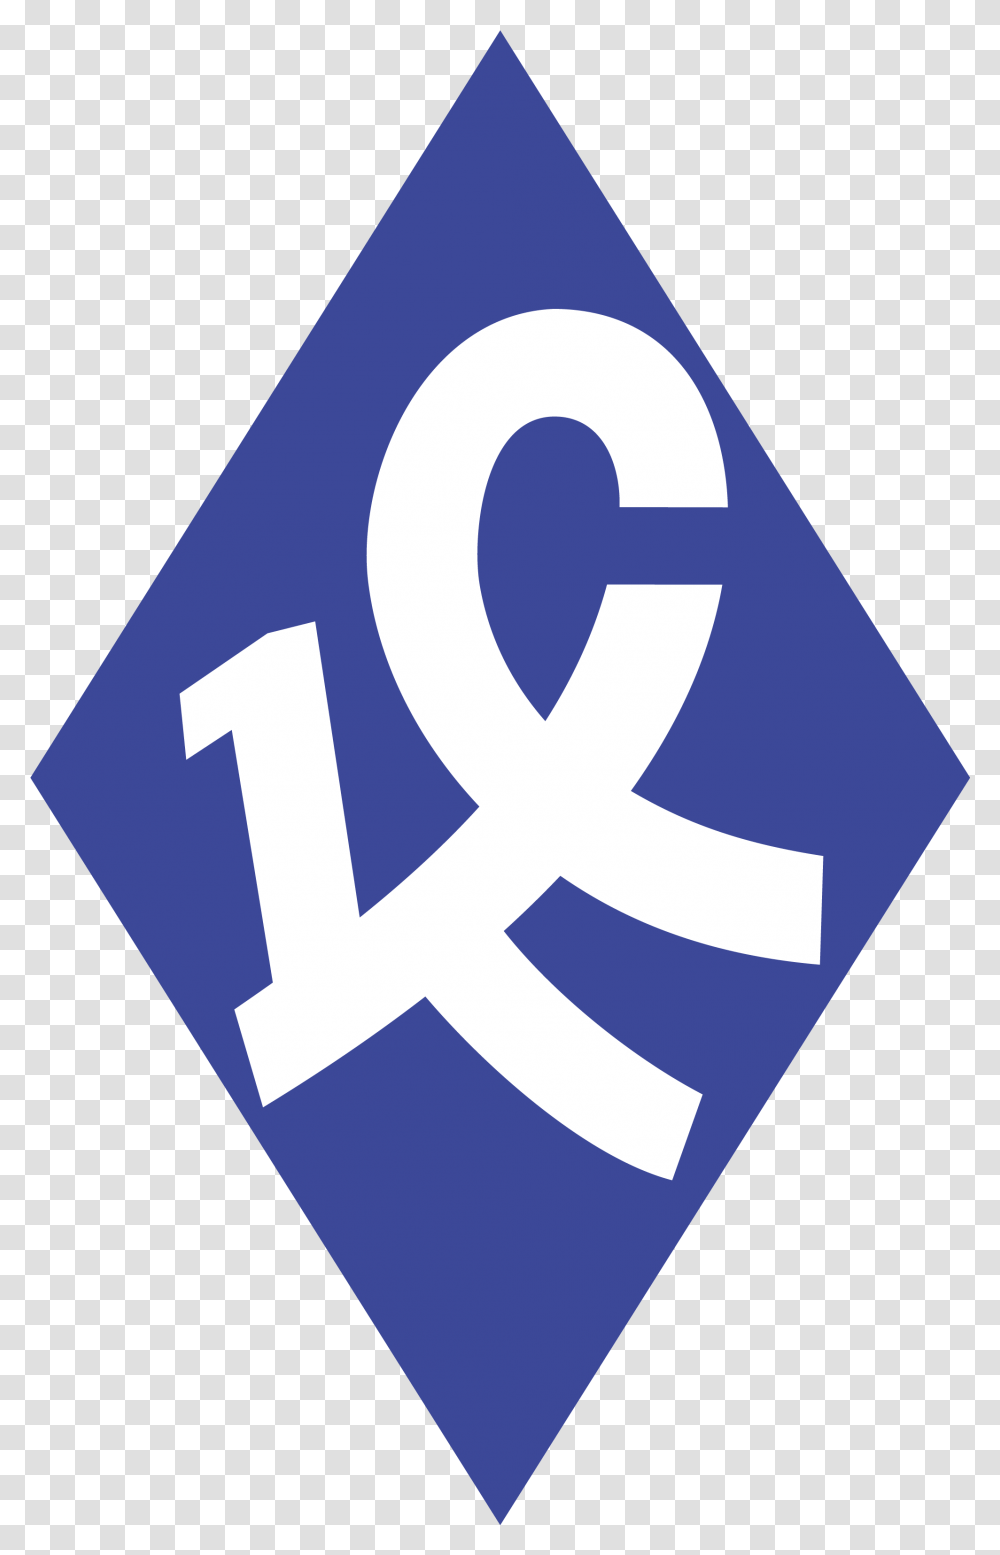 Vector Emblem Of The Football Club Krylia Sovetov Samara Fc Krylia Sovetov Samara, Logo, Symbol, Trademark, Text Transparent Png